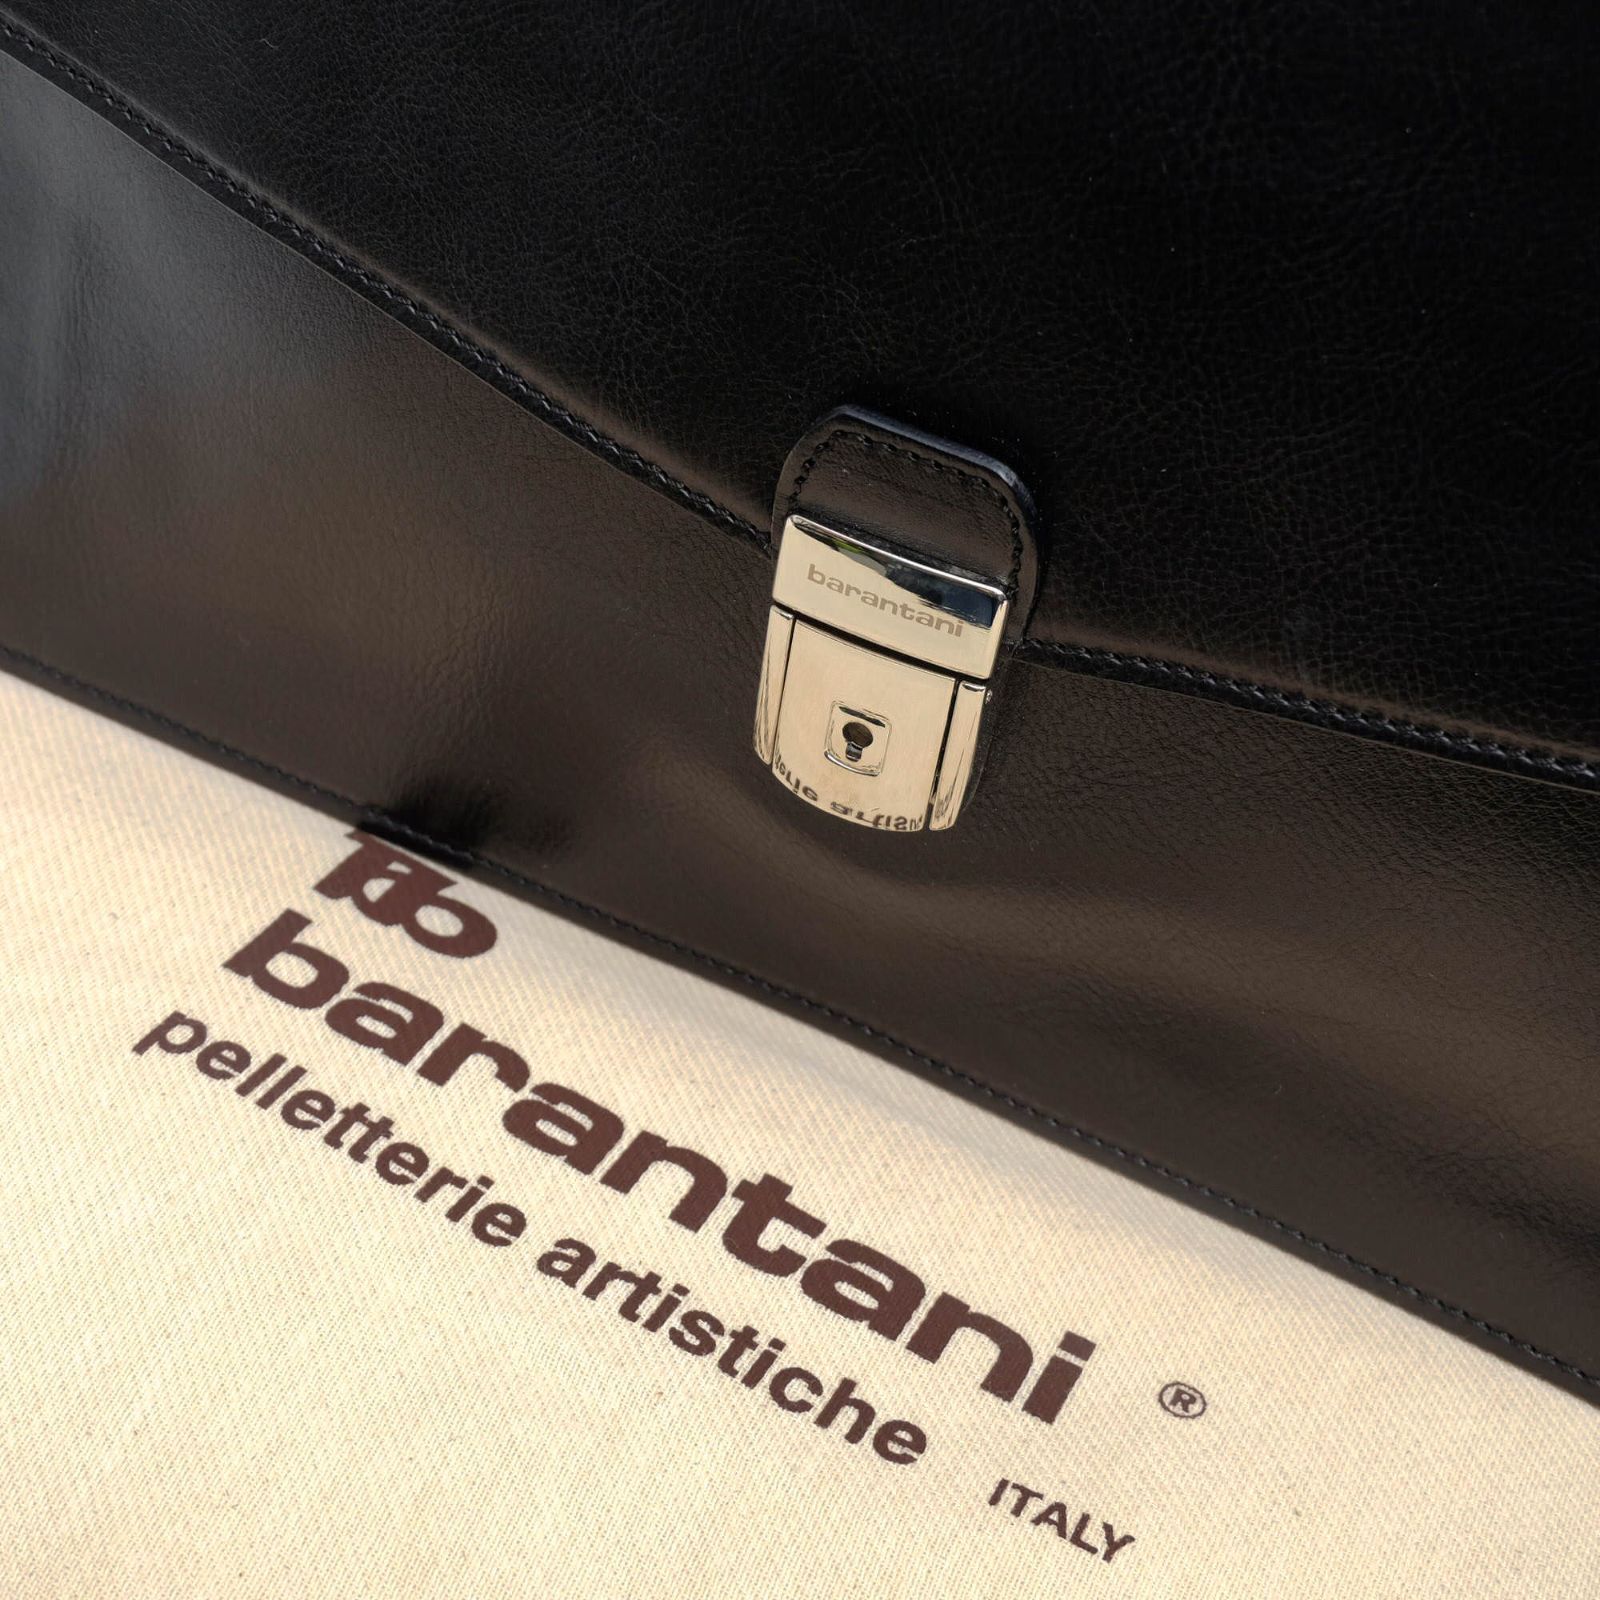 バランターニ／barantani バッグ ブリーフケース ビジネスバッグ 鞄 ビジネス メンズ 男性 男性用レザー 革 本革 ブラック 黒 20290